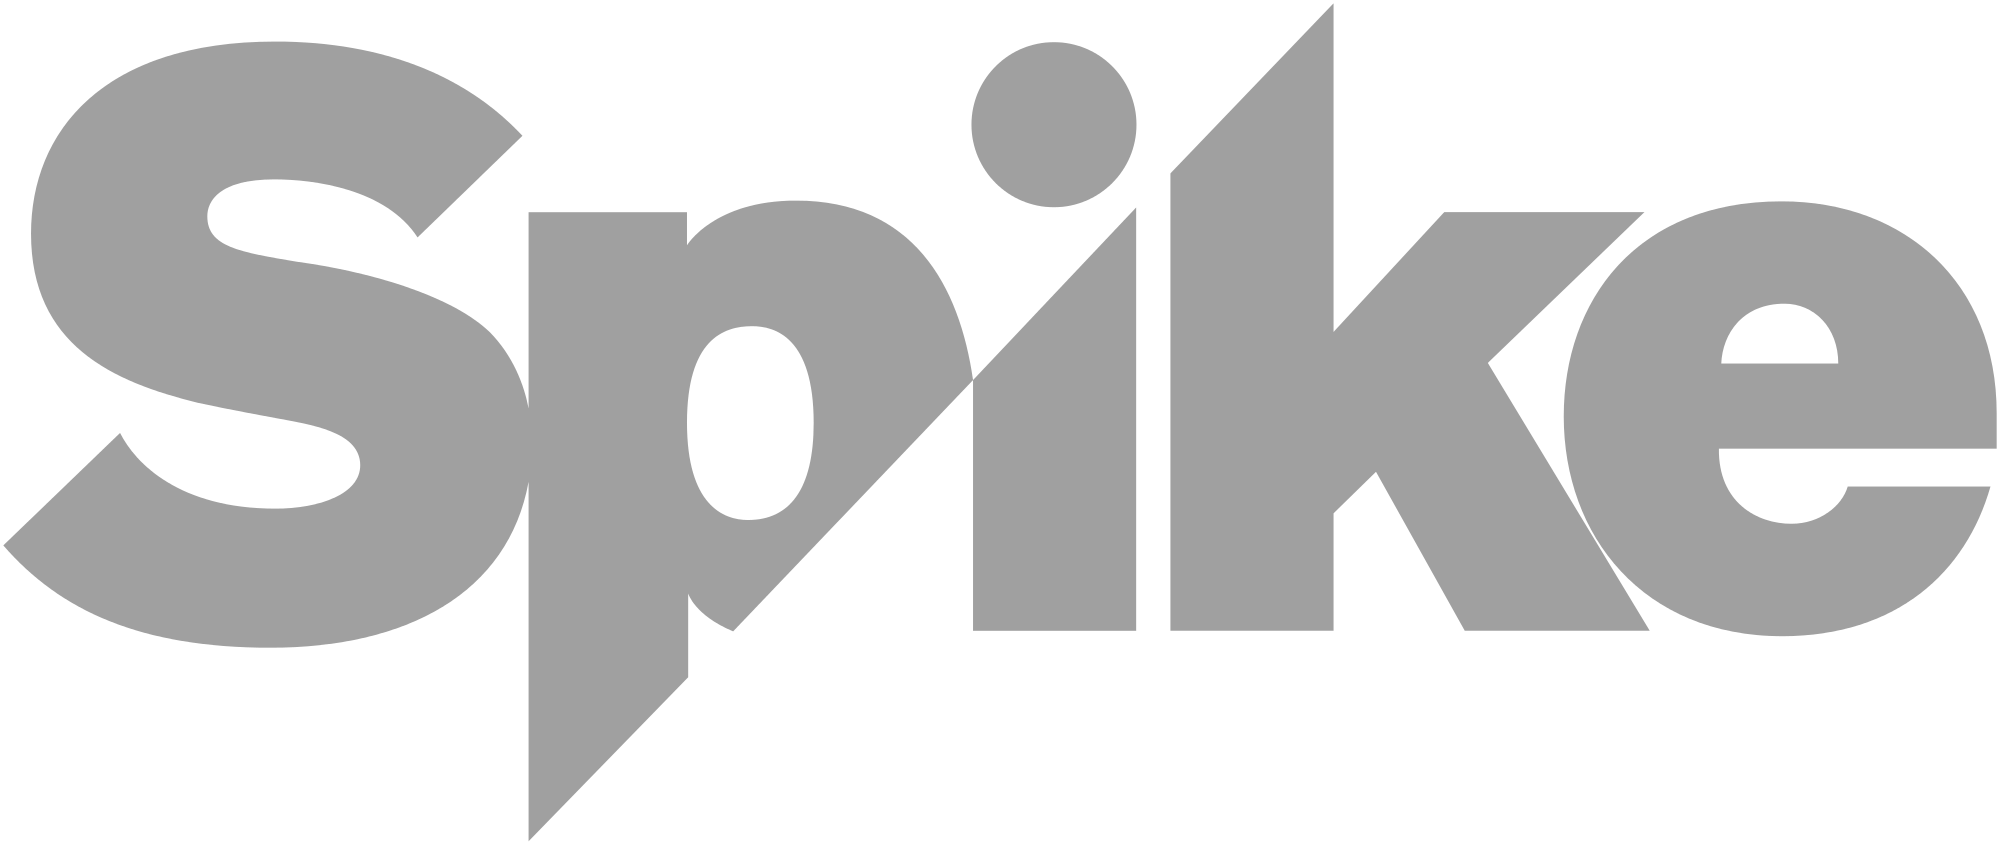 Spike_logo_2015.svg.png